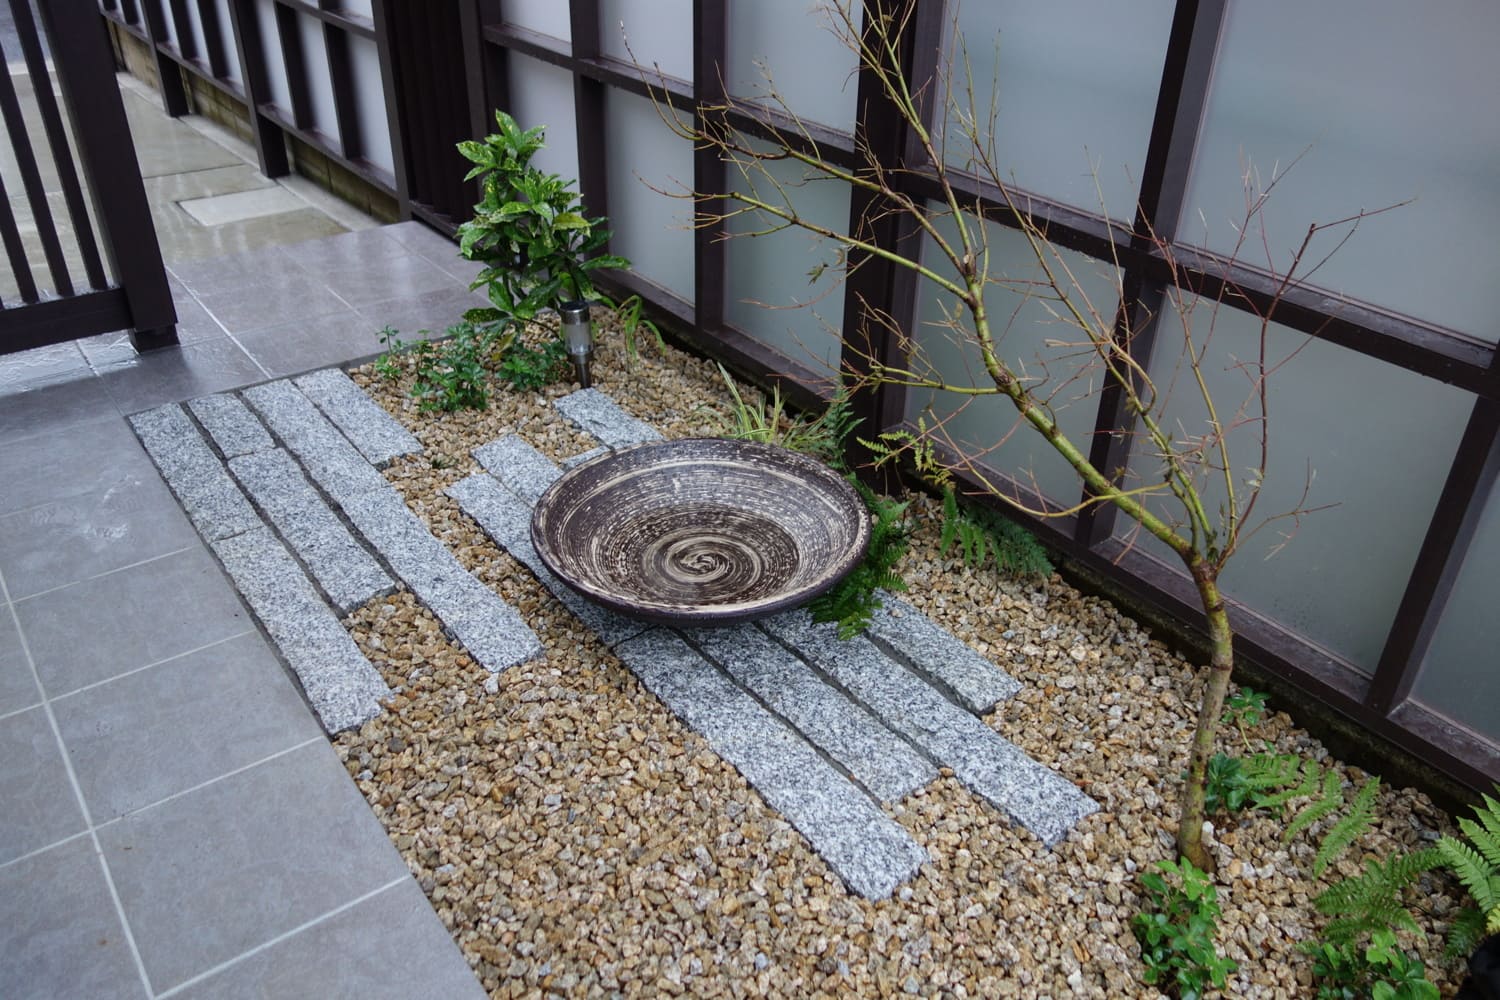 自然石を使った坪庭を室内から眺めるひとときが楽しみです。